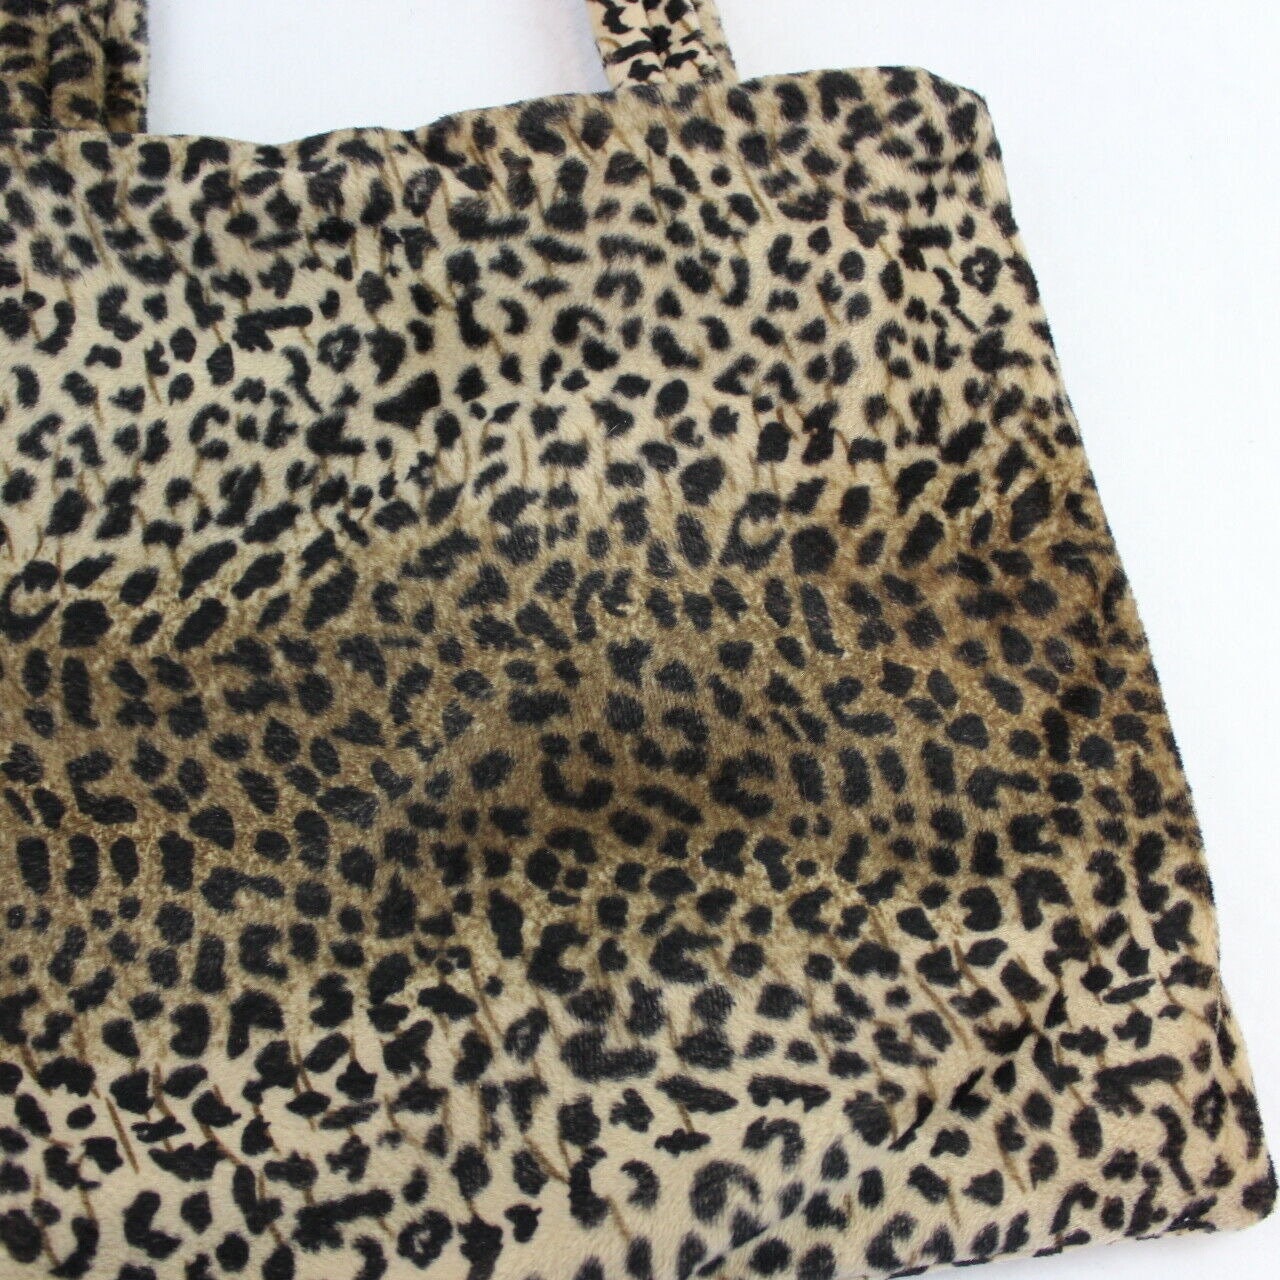 Vintage Handmade Faux Fur Cheetah Print Tote Bag Purse Handbag | Etsy